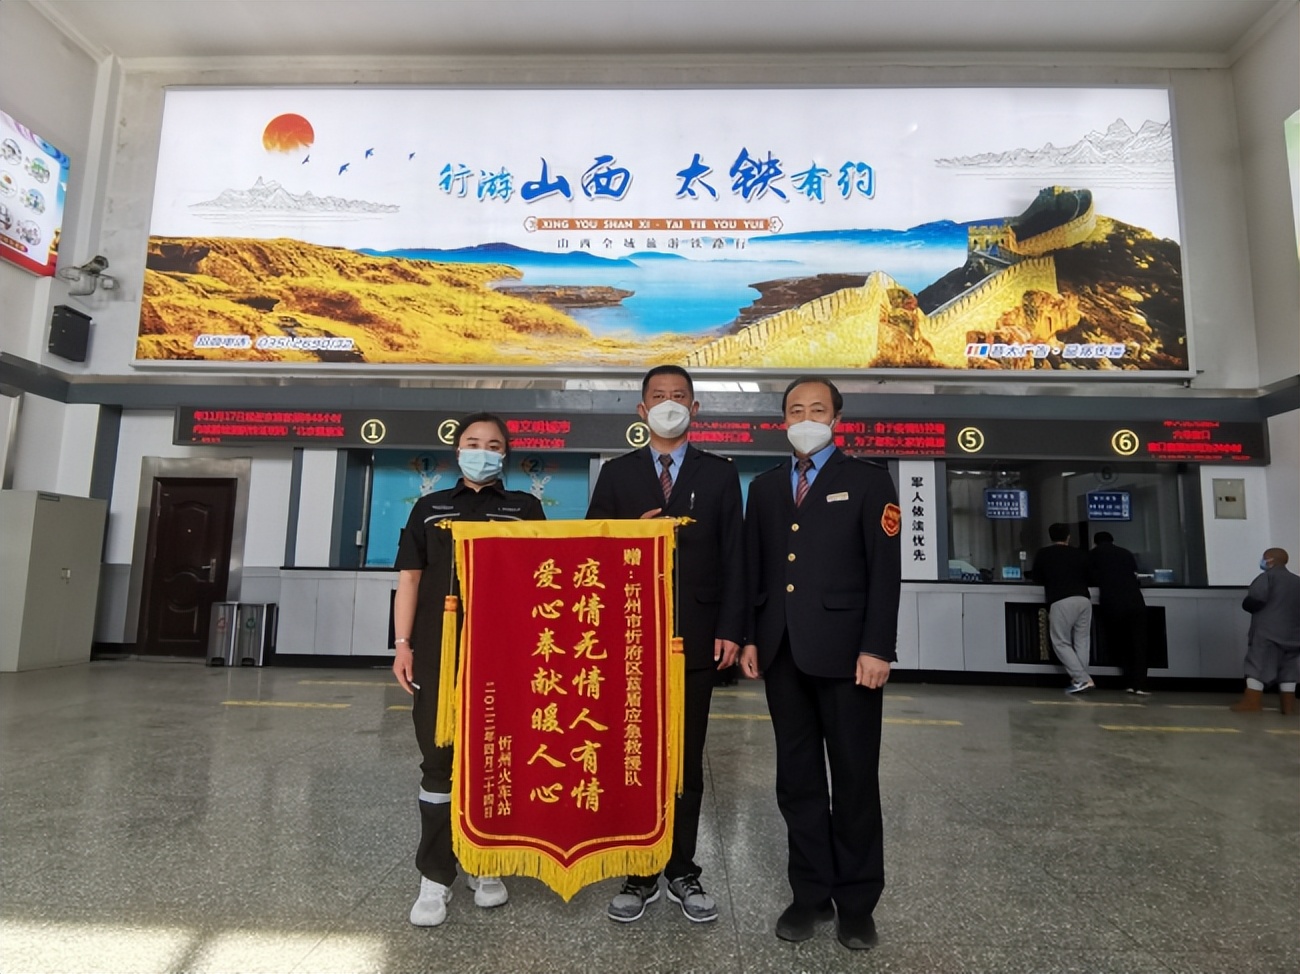 忻州火车站表彰爱心团队疫情防控所做的奉献并颁发锦旗